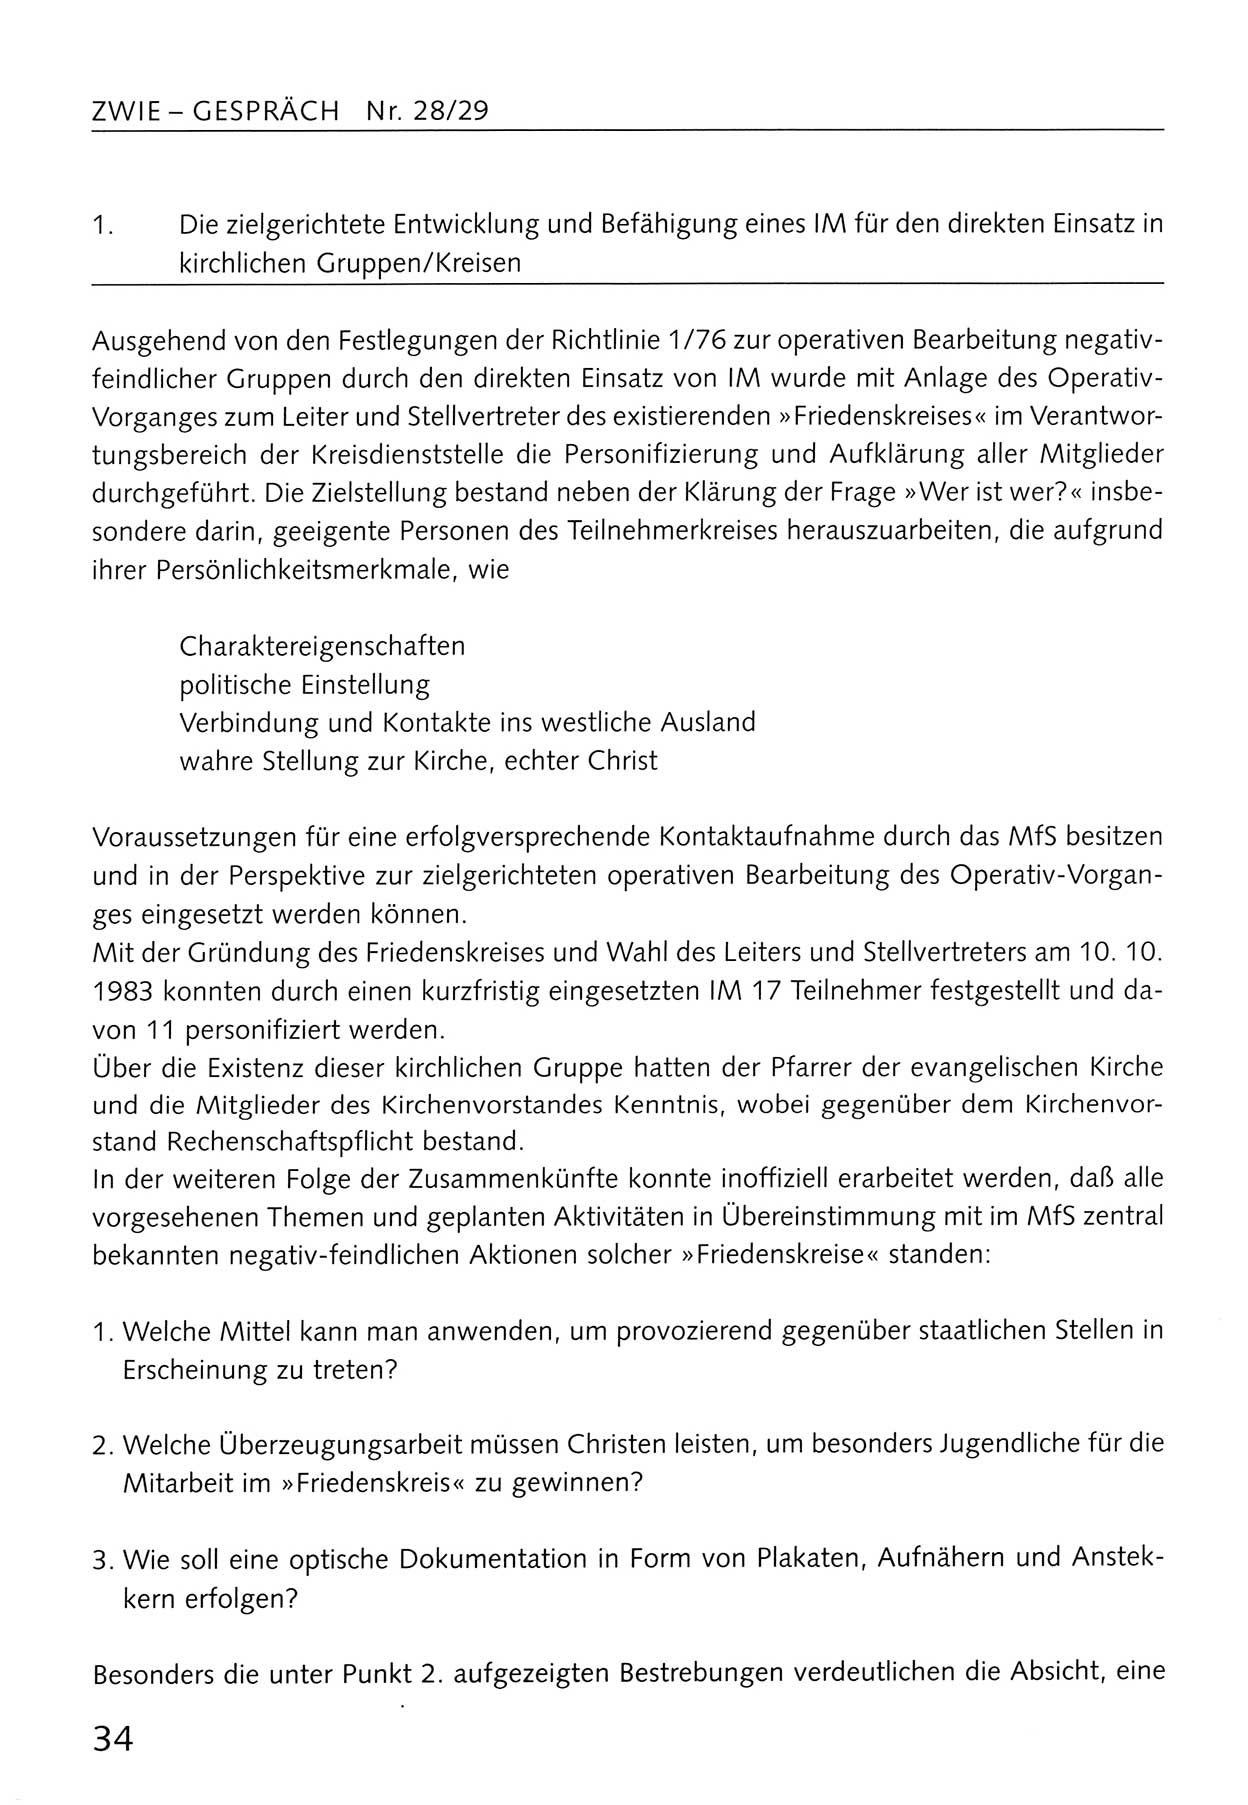 Zwie-Gespräch, Beiträge zum Umgang mit der Staatssicherheits-Vergangenheit [Deutsche Demokratische Republik (DDR)], Ausgabe Nr. 28/29, Berlin 1995, Seite 34 (Zwie-Gespr. Ausg. 28/29 1995, S. 34)